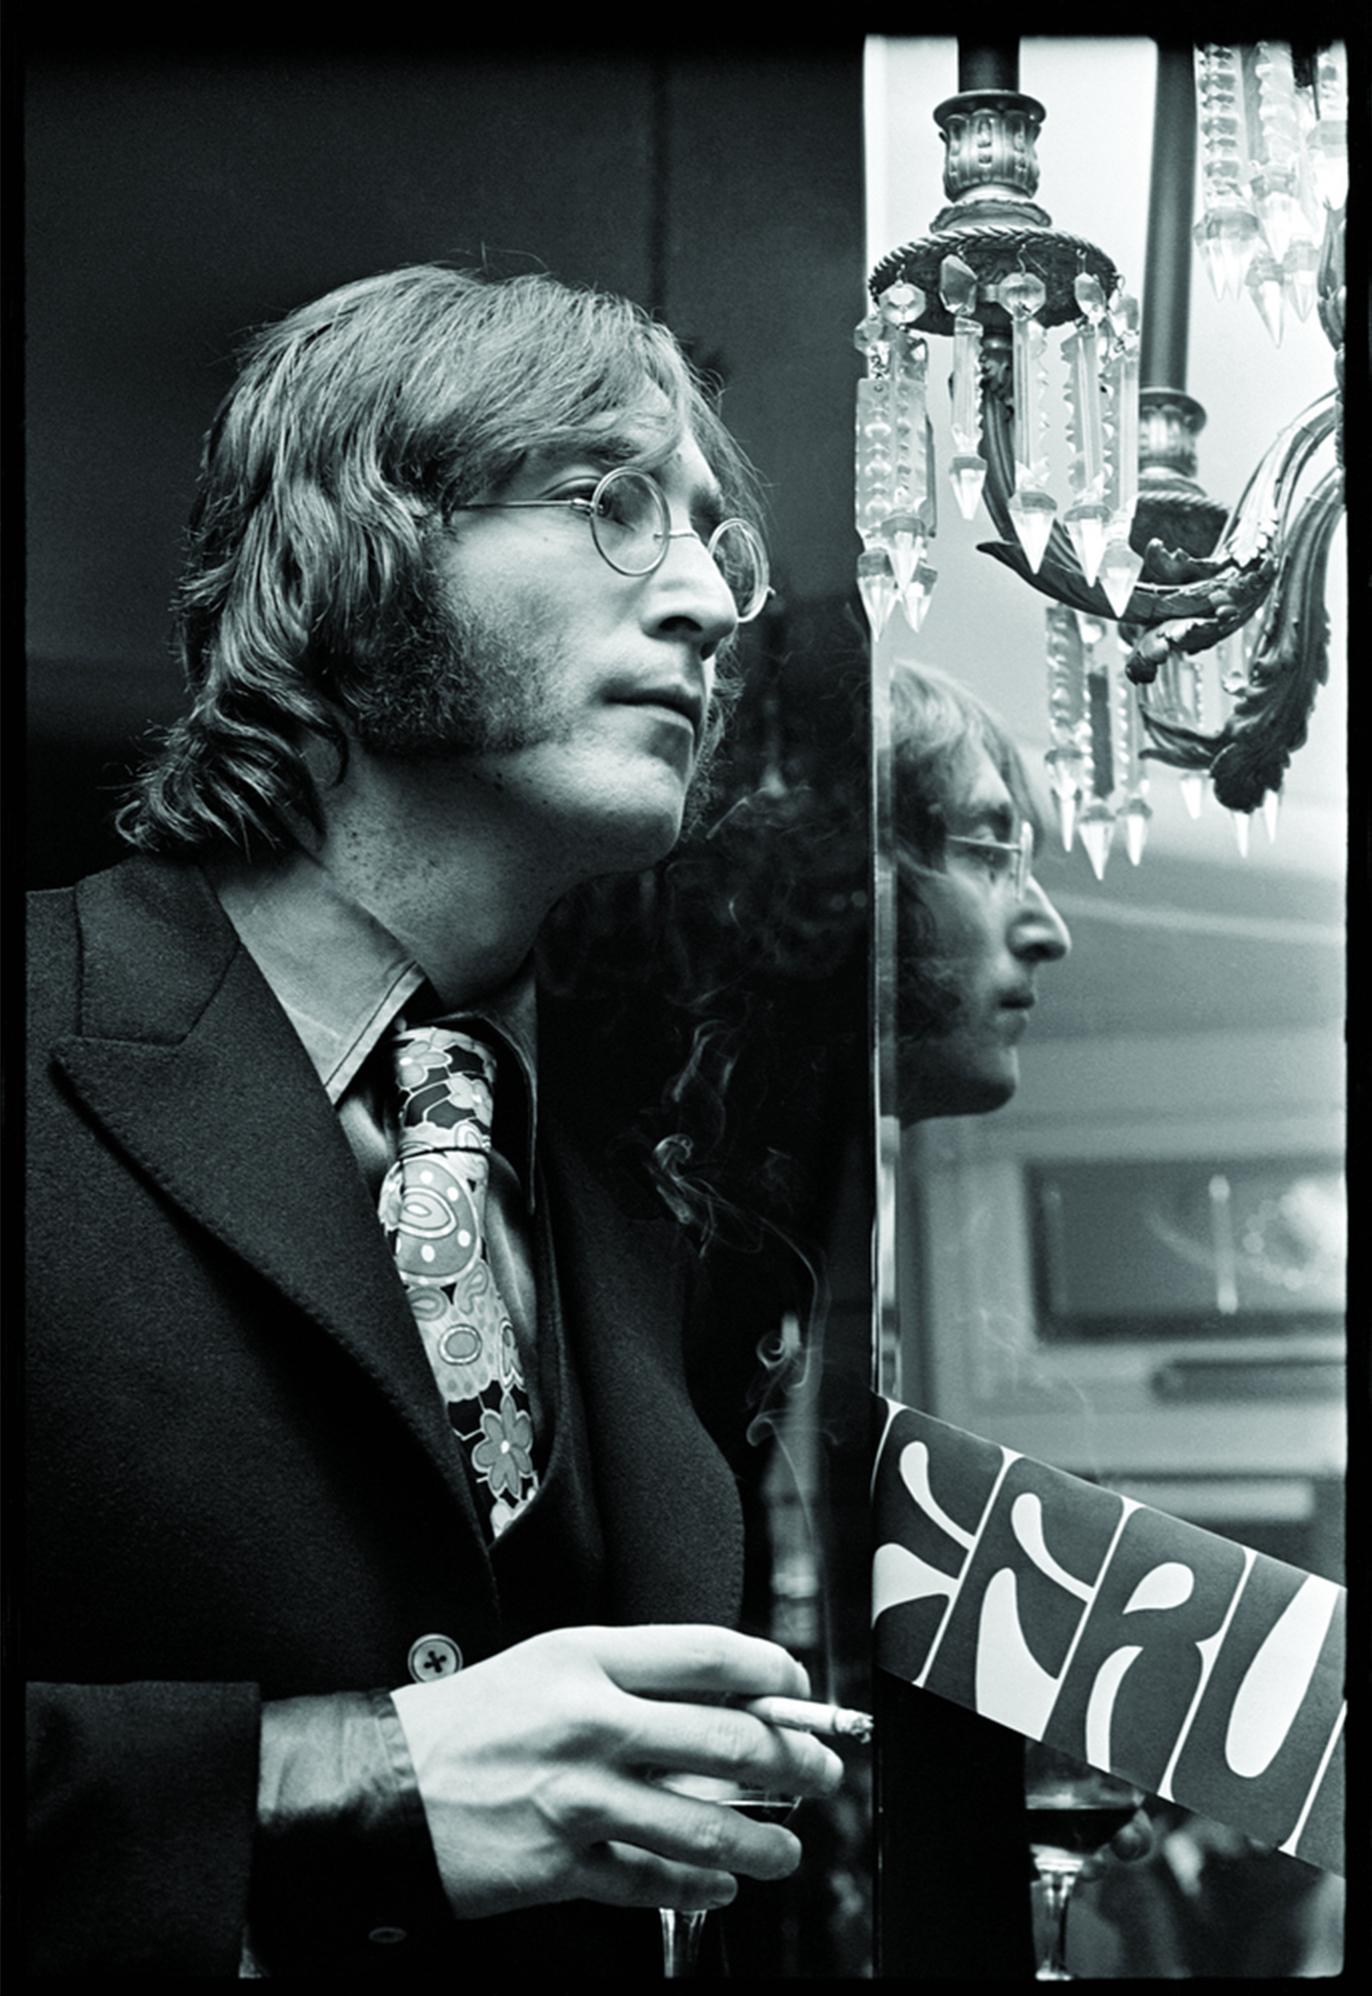 Alec Byrne Portrait Photograph – John Lennon, Porträt von 1968